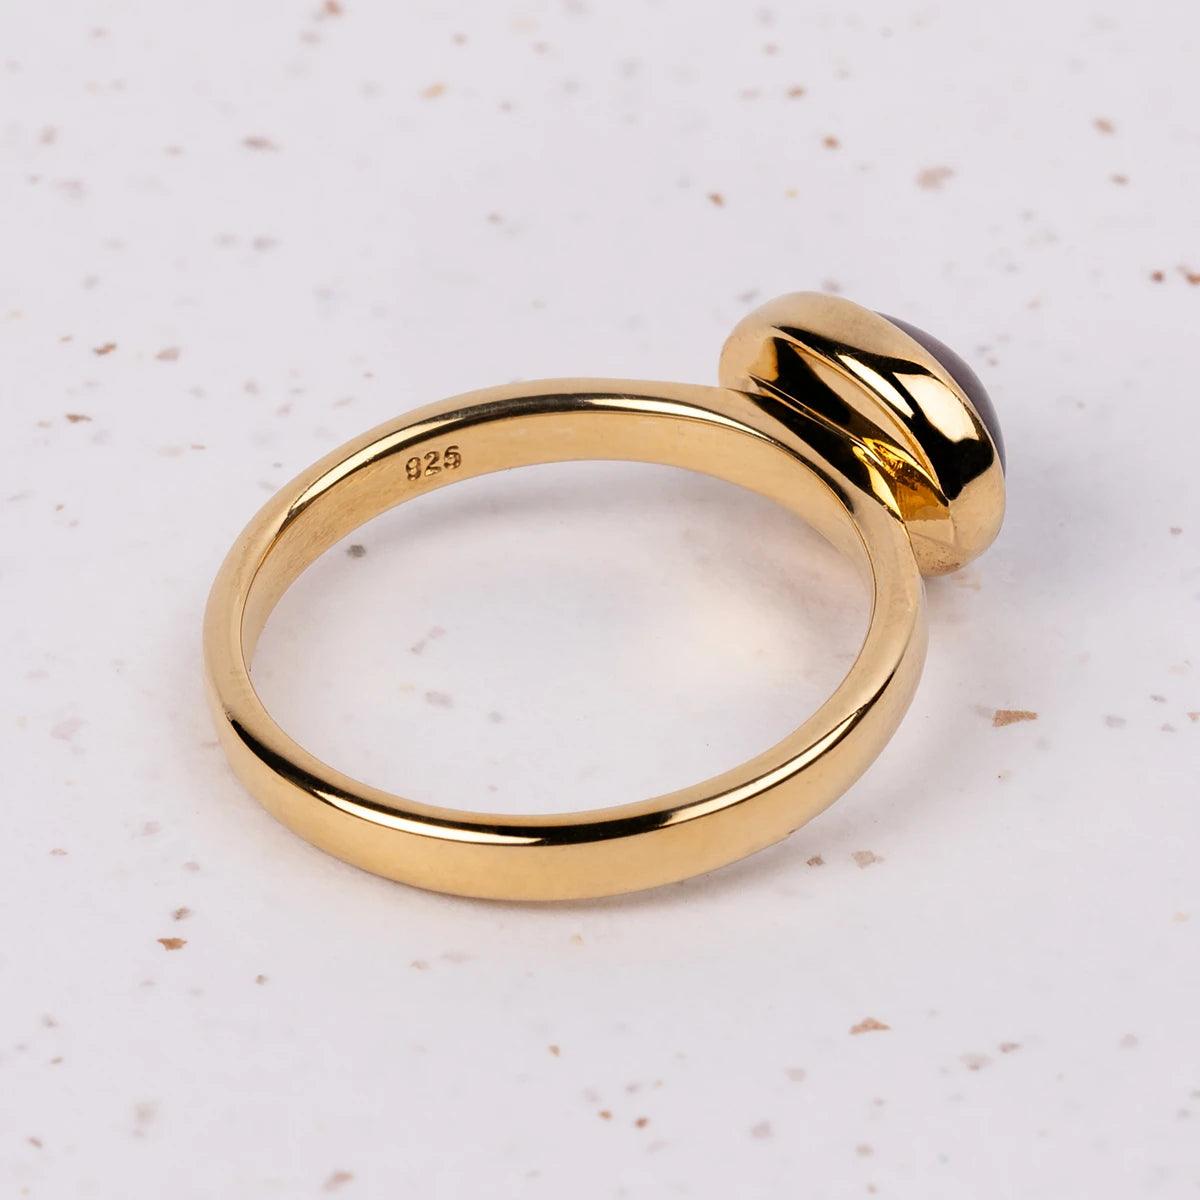 Elizabeth Bennet Gold-Plated Ring - JaneAusten.co.uk